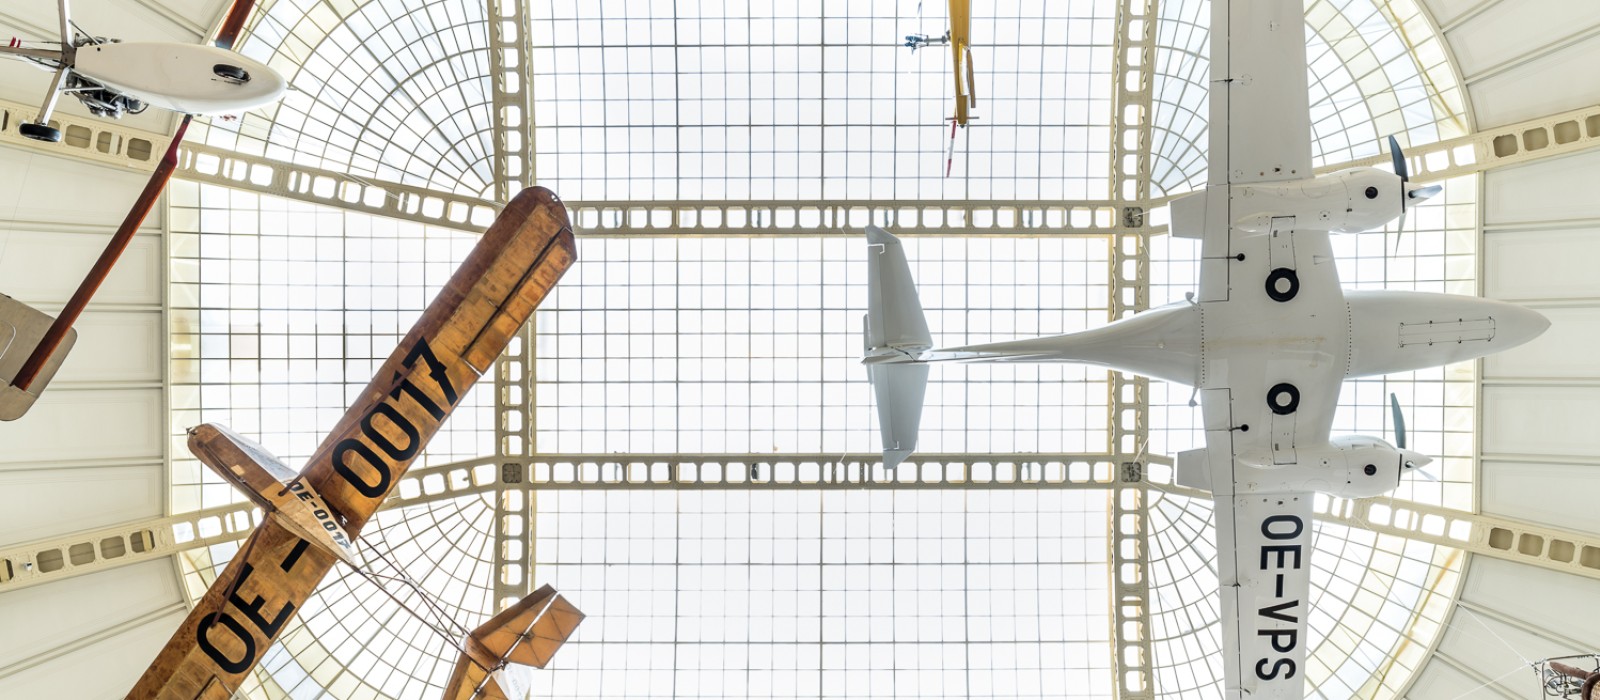 Flugzeuge, die unter dem Dach des Museums hängen, Teil der Ausstellung "Mobilität": 